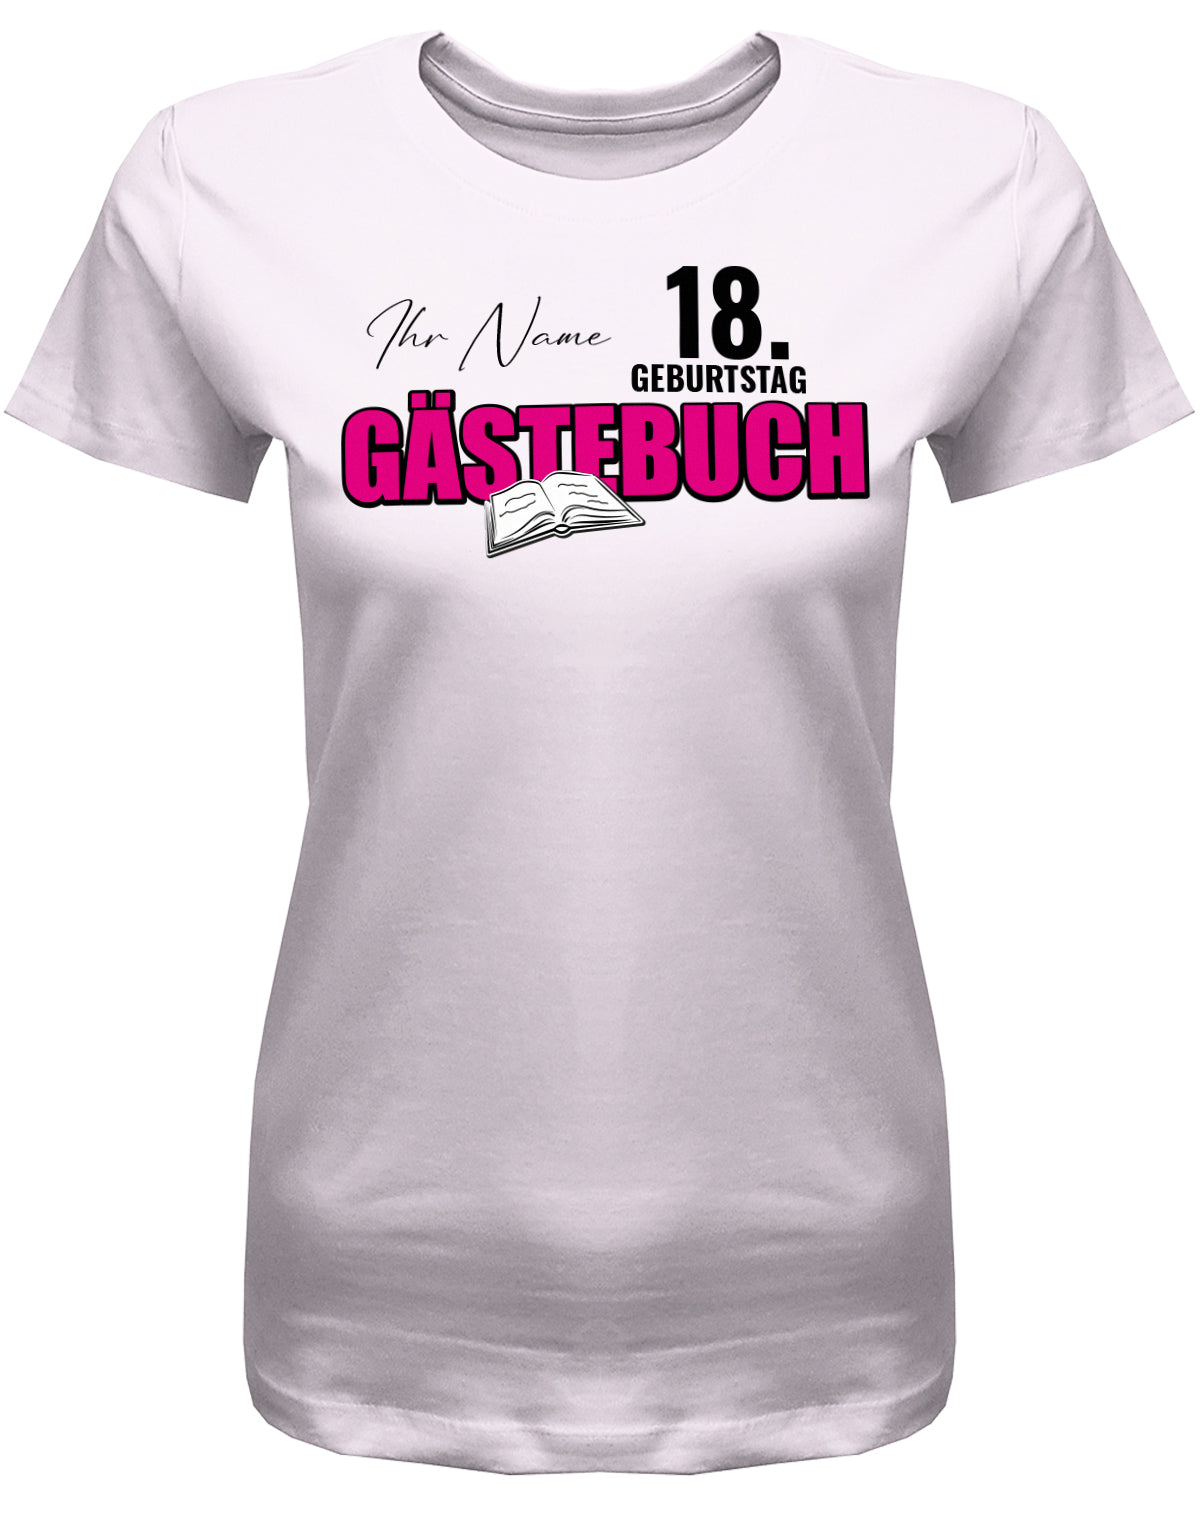 Gästeliste mit Namen – Gästebuch 18 Geburtstag Shirt Mädchen